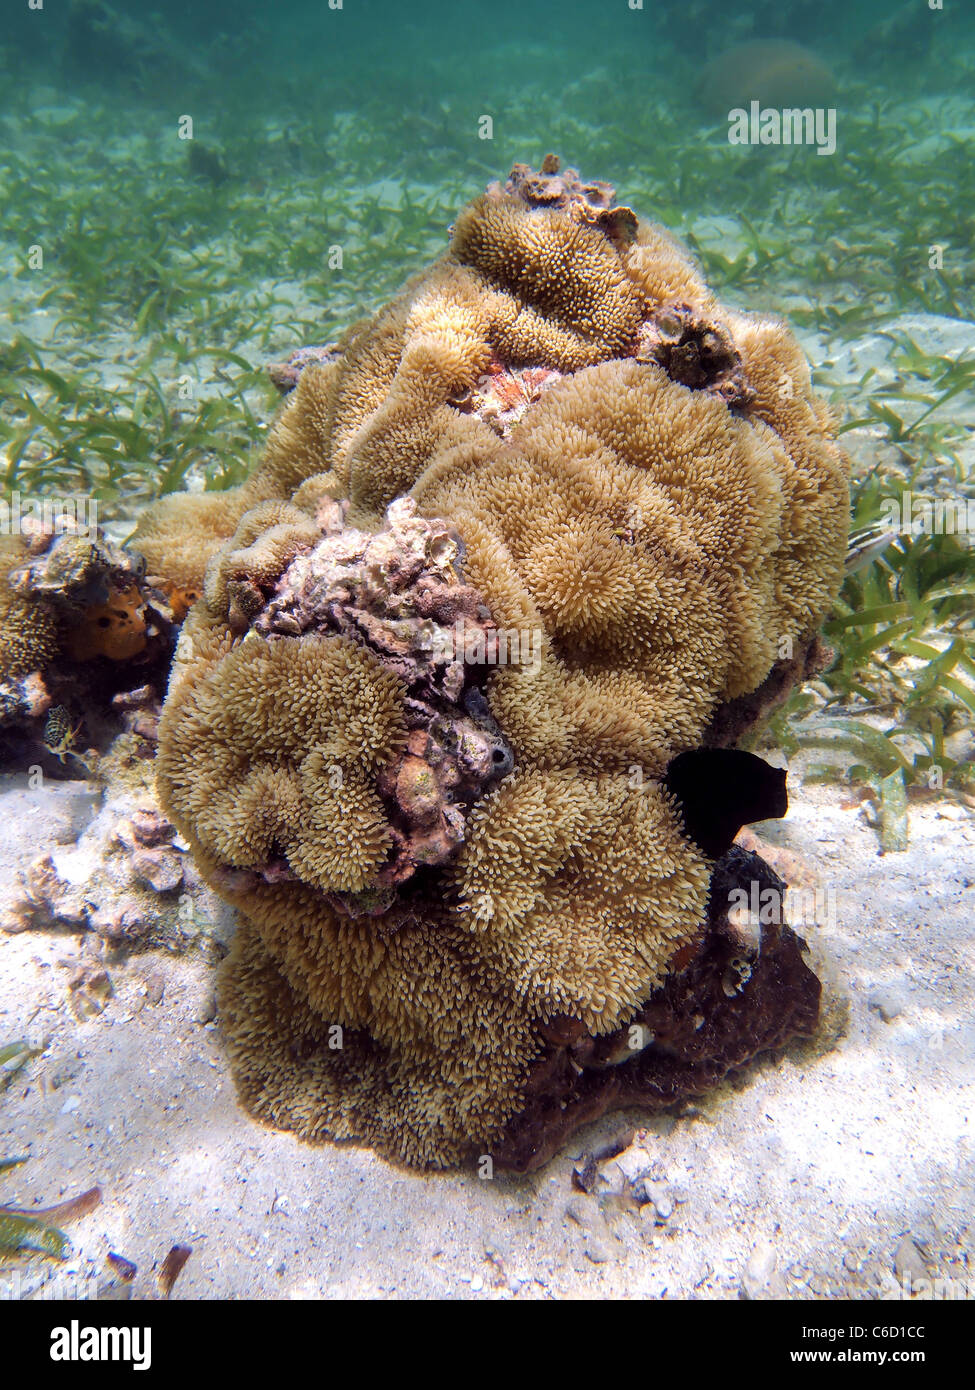 Anemoni di mare fissato sulla coral, costa caraibica del Costa Rica Foto Stock